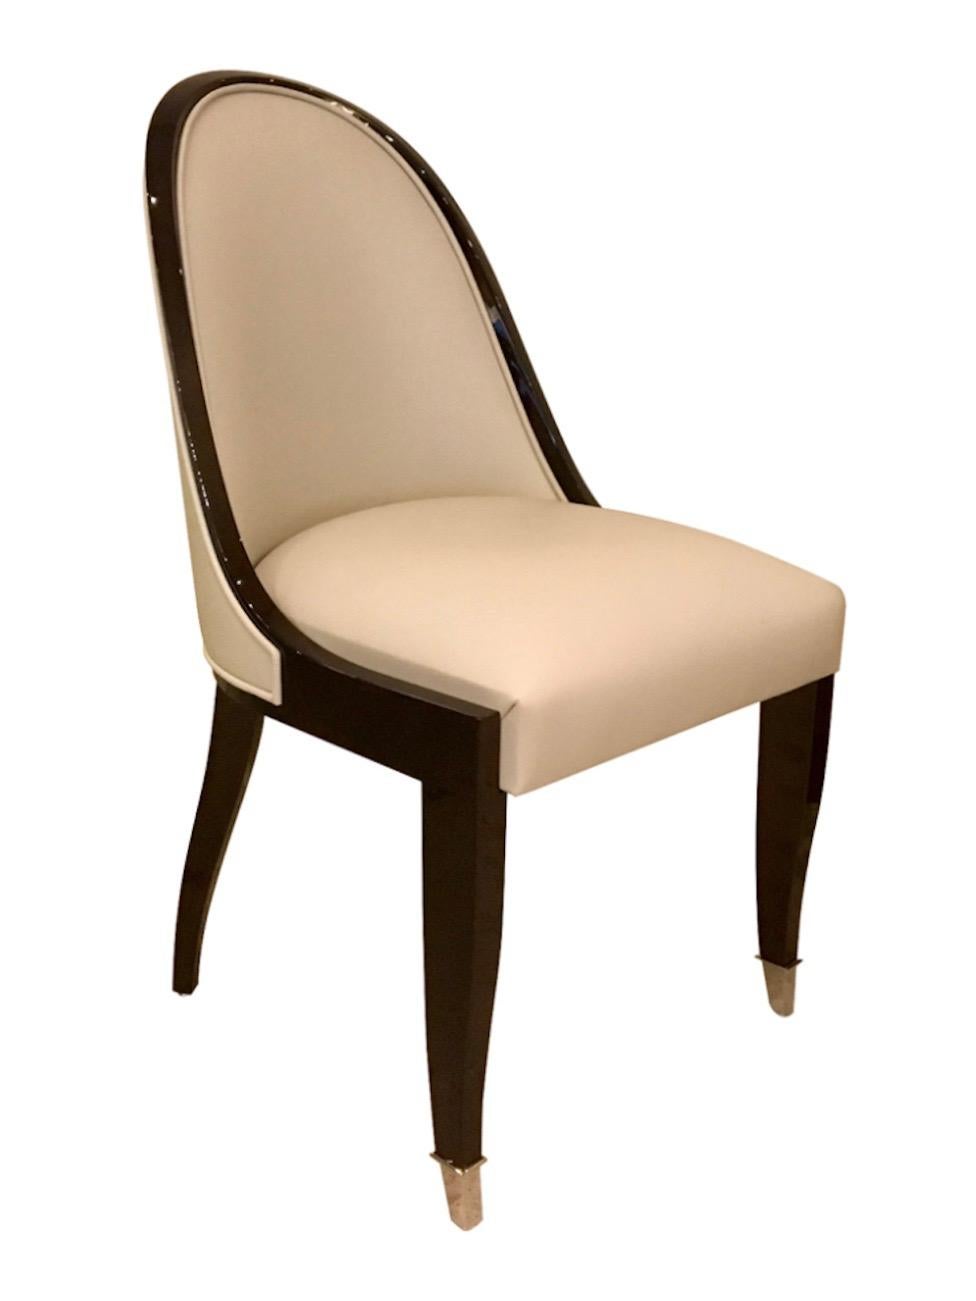 Eleganter Art-Déco-Stuhl mit schön schmaler, geschwungener Rückenlehne. 
Dies ist die berühmteste Stuhlform des Art déco. 
Sehr aufwendig in der Produktion, bietet hervorragenden Sitzkomfort. 

Hohe Qualität! Handgefertigt in Deutschland.